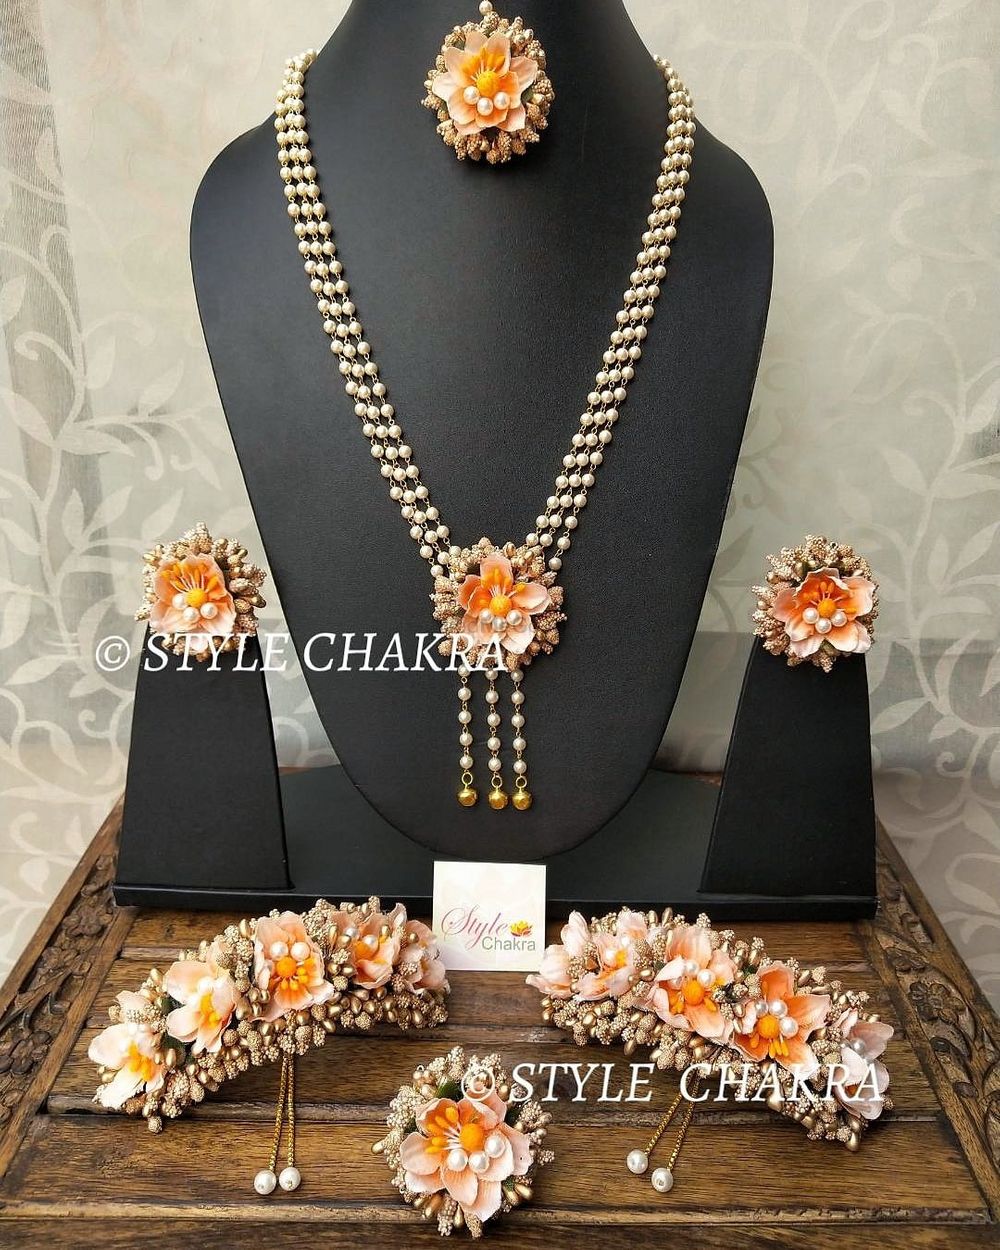 Photo By Style Chakra - Jewellery